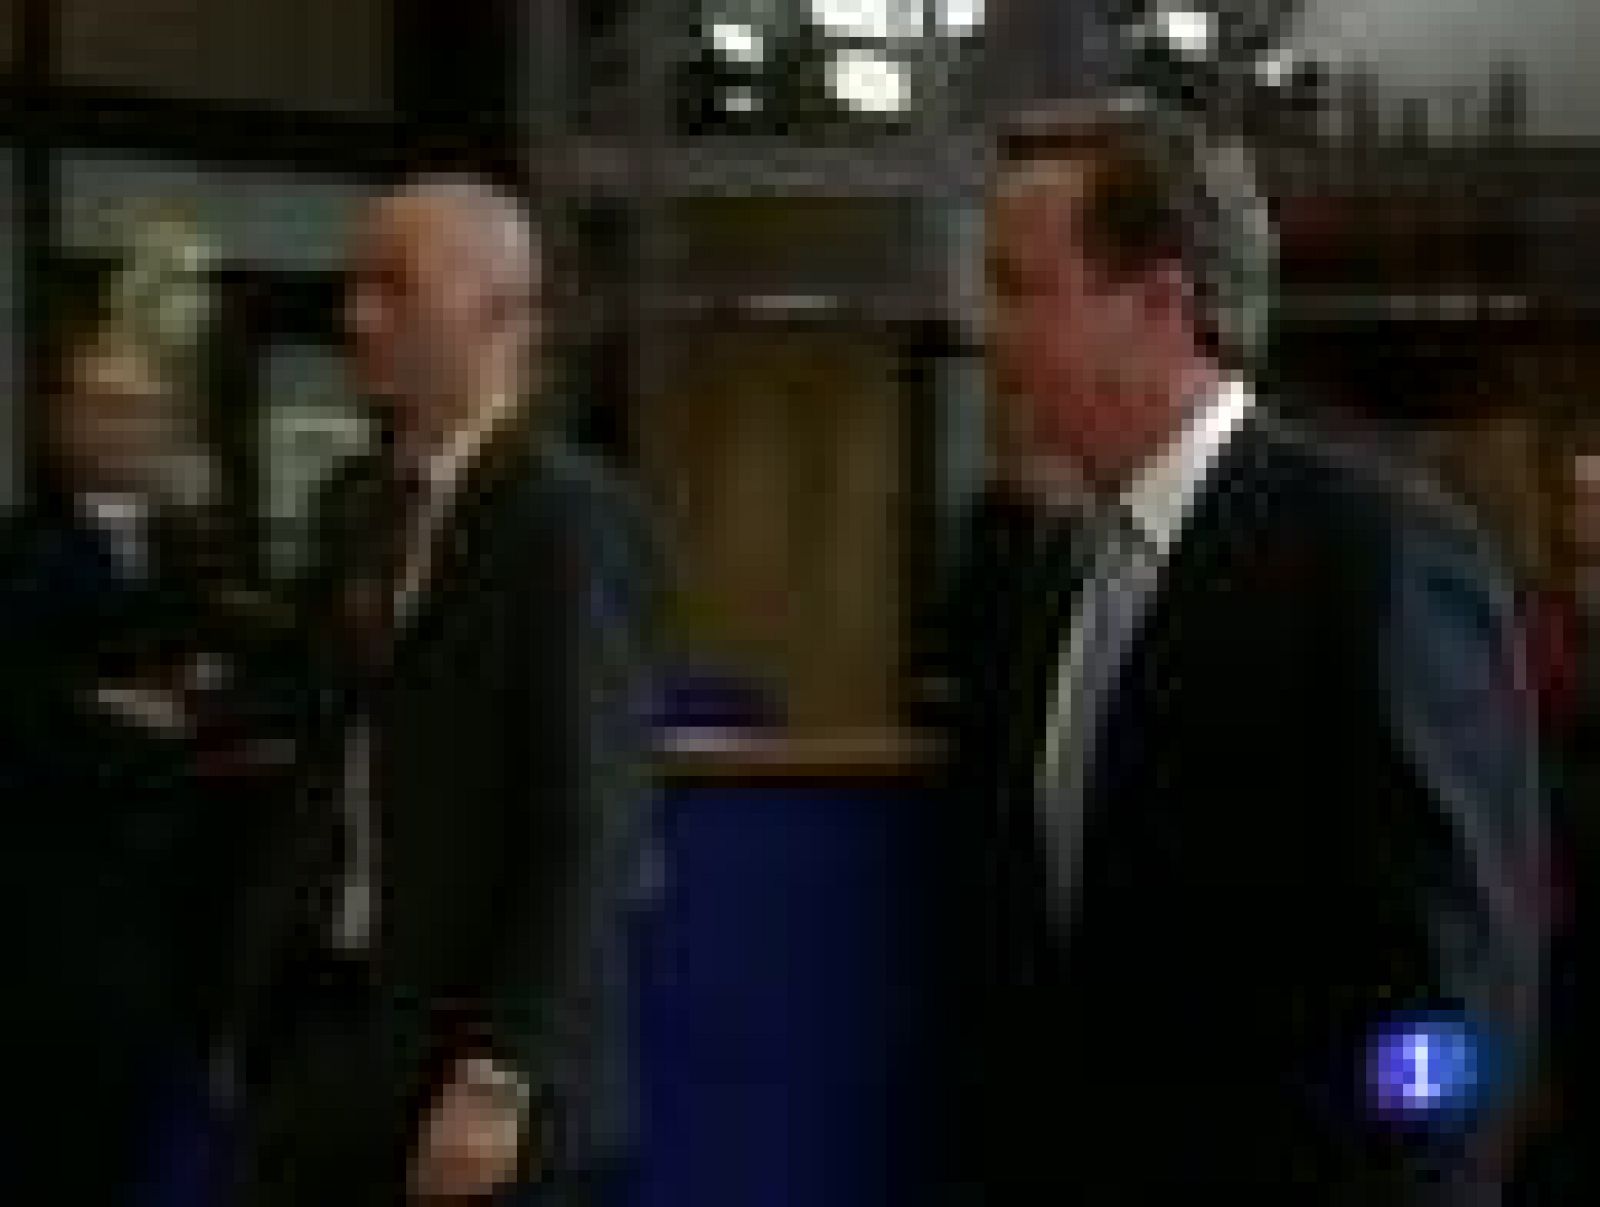 Cameron explicará su decisión de vetar los cambios en el Tratado Europeo